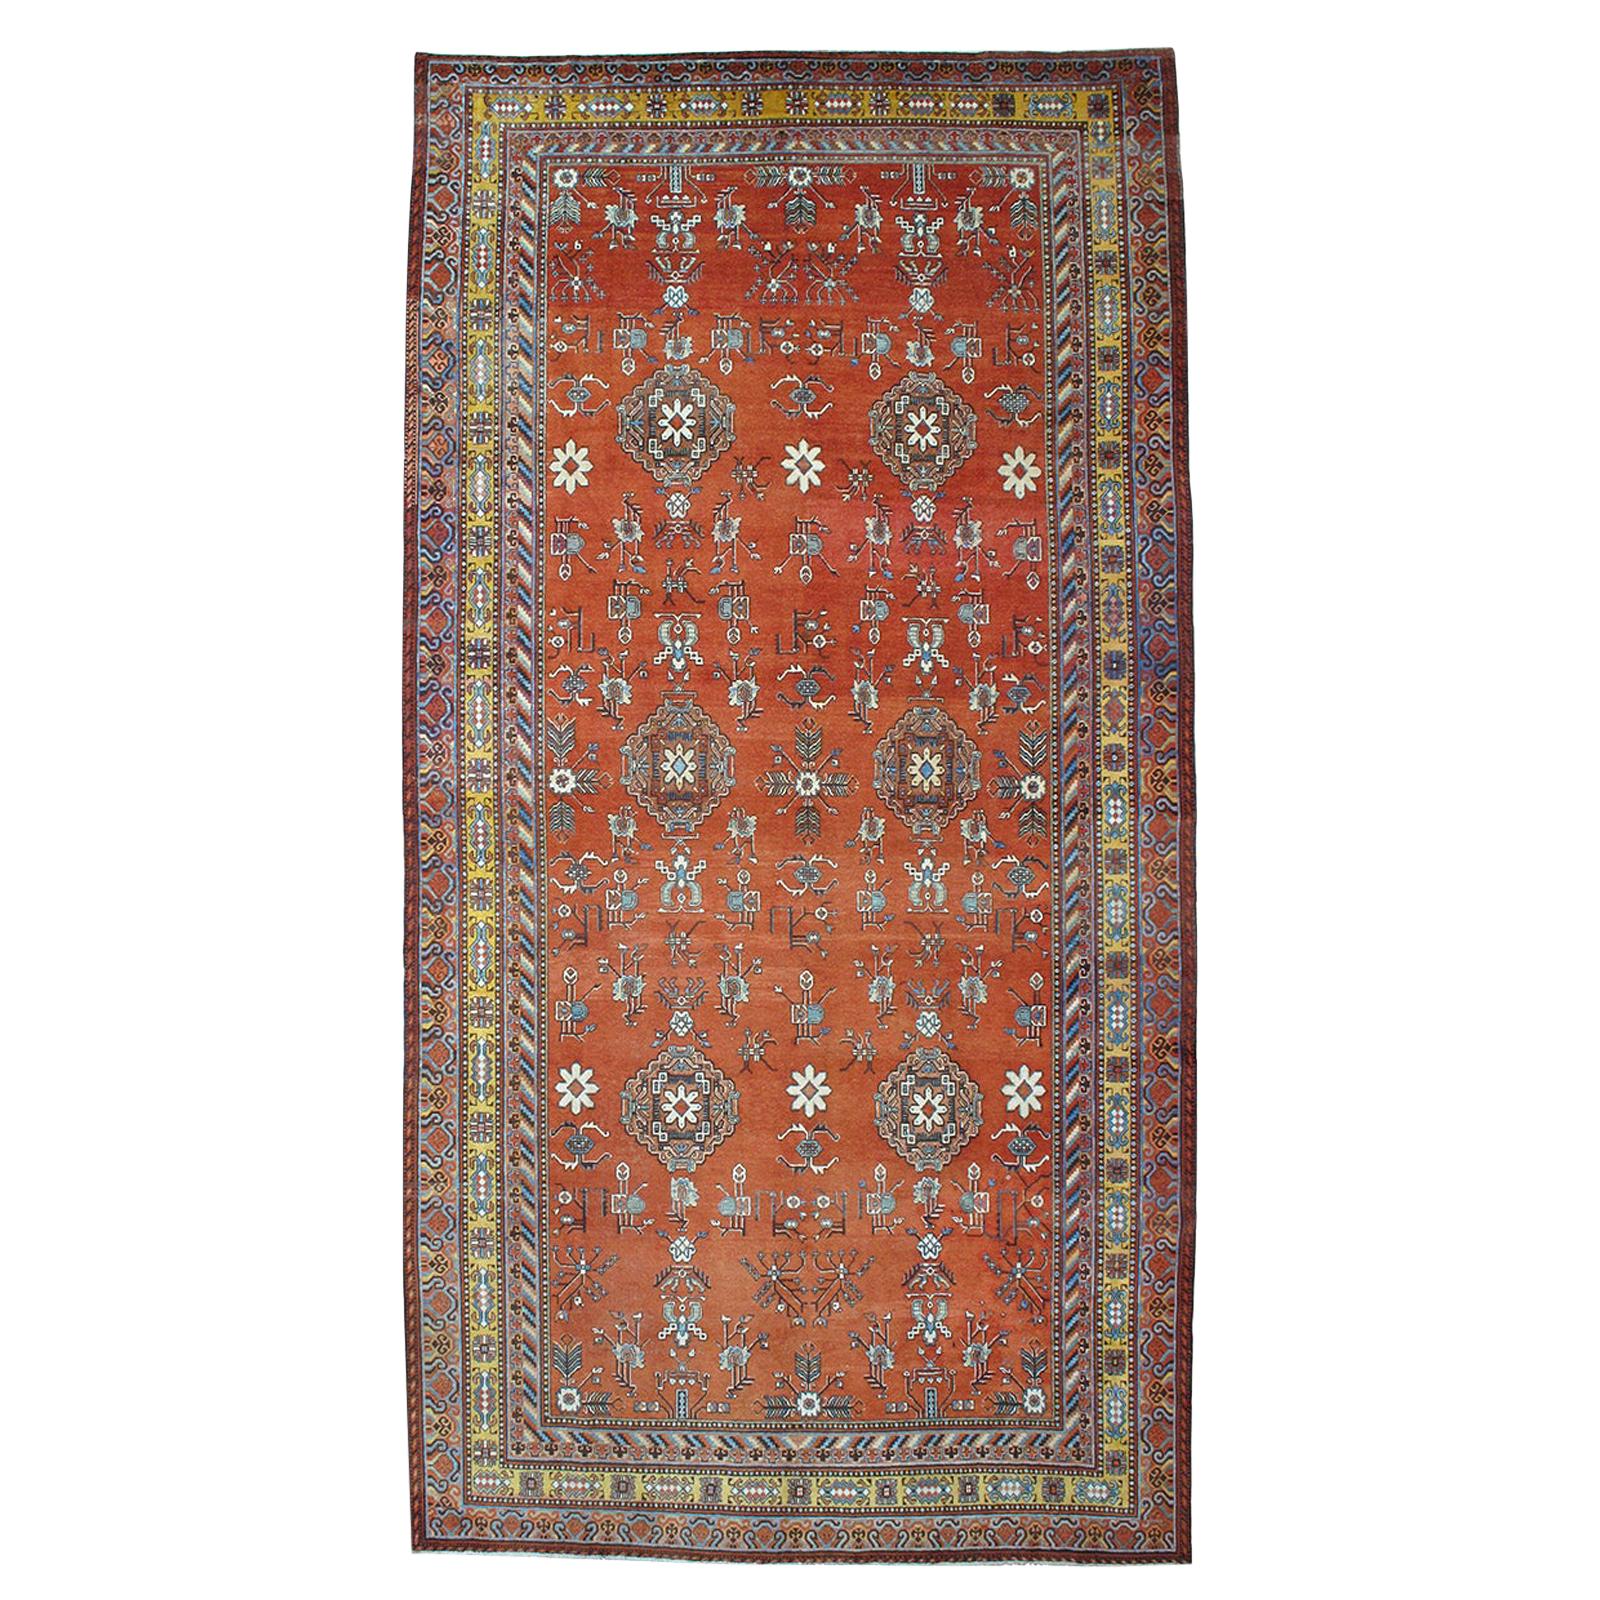 Large Khotan Carpet 'DK-109-99'